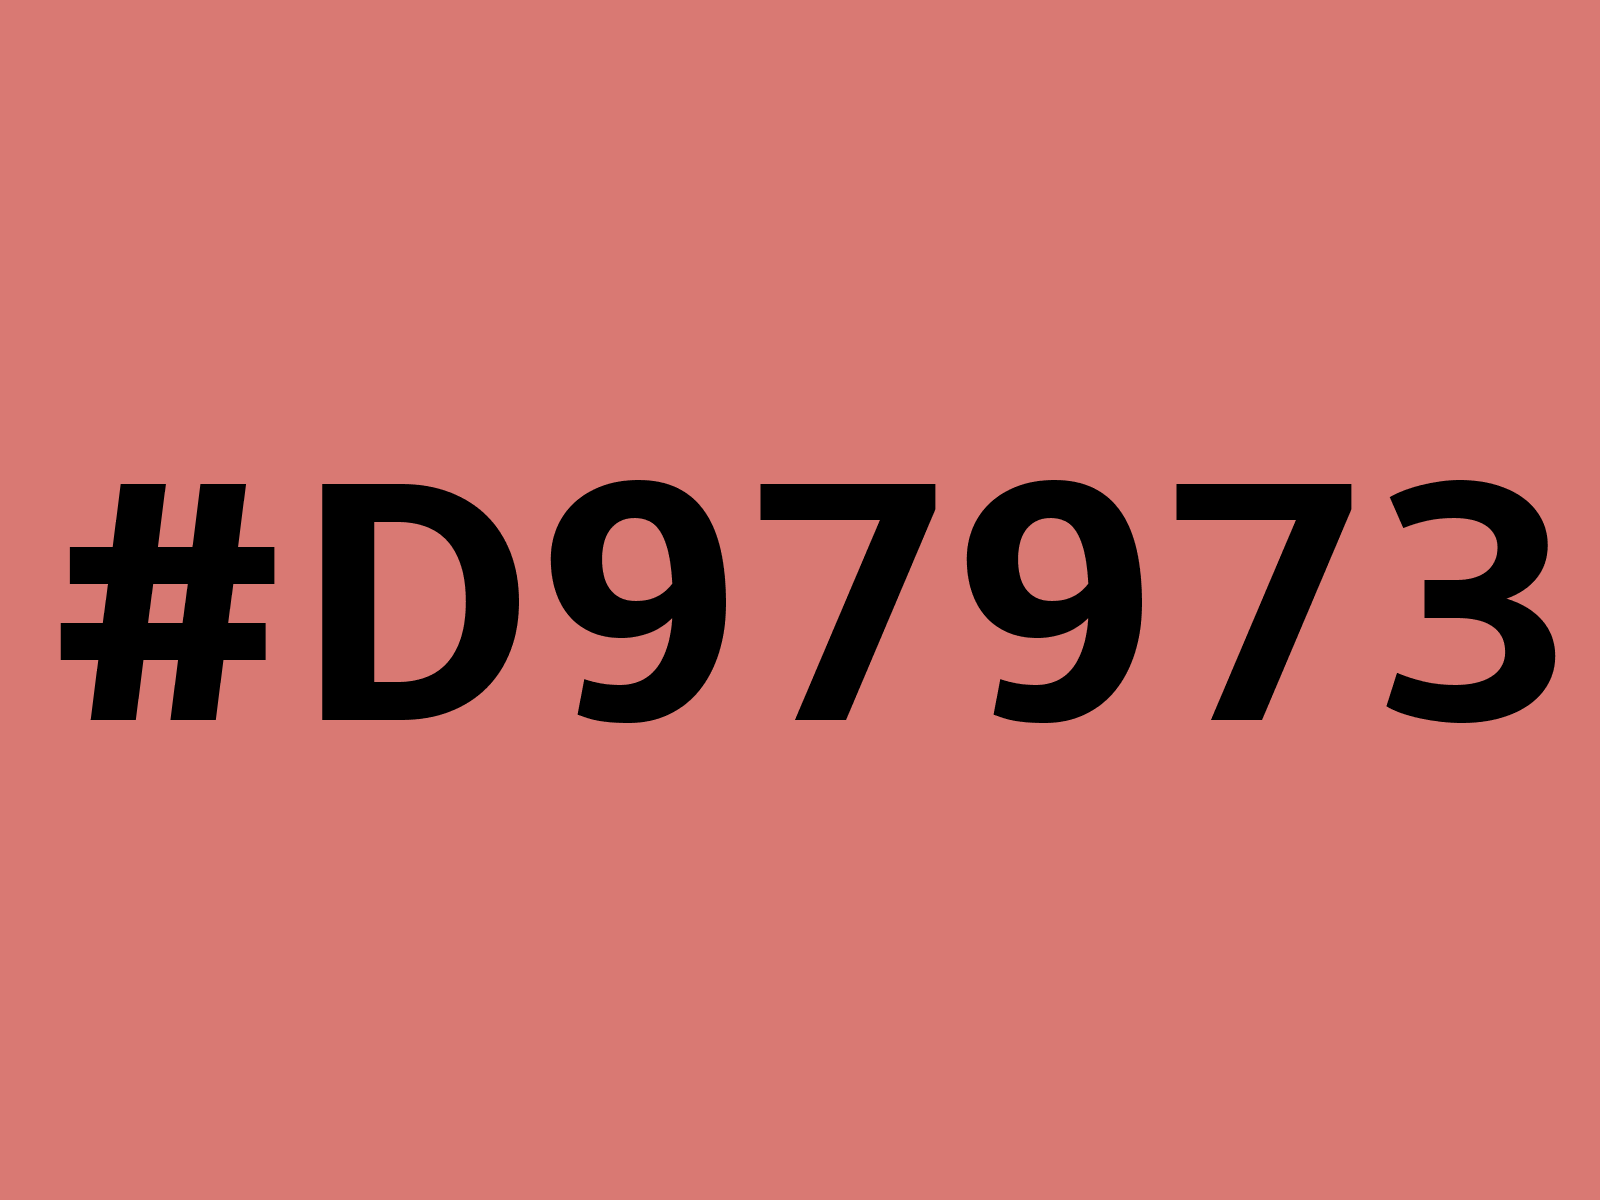 d97973